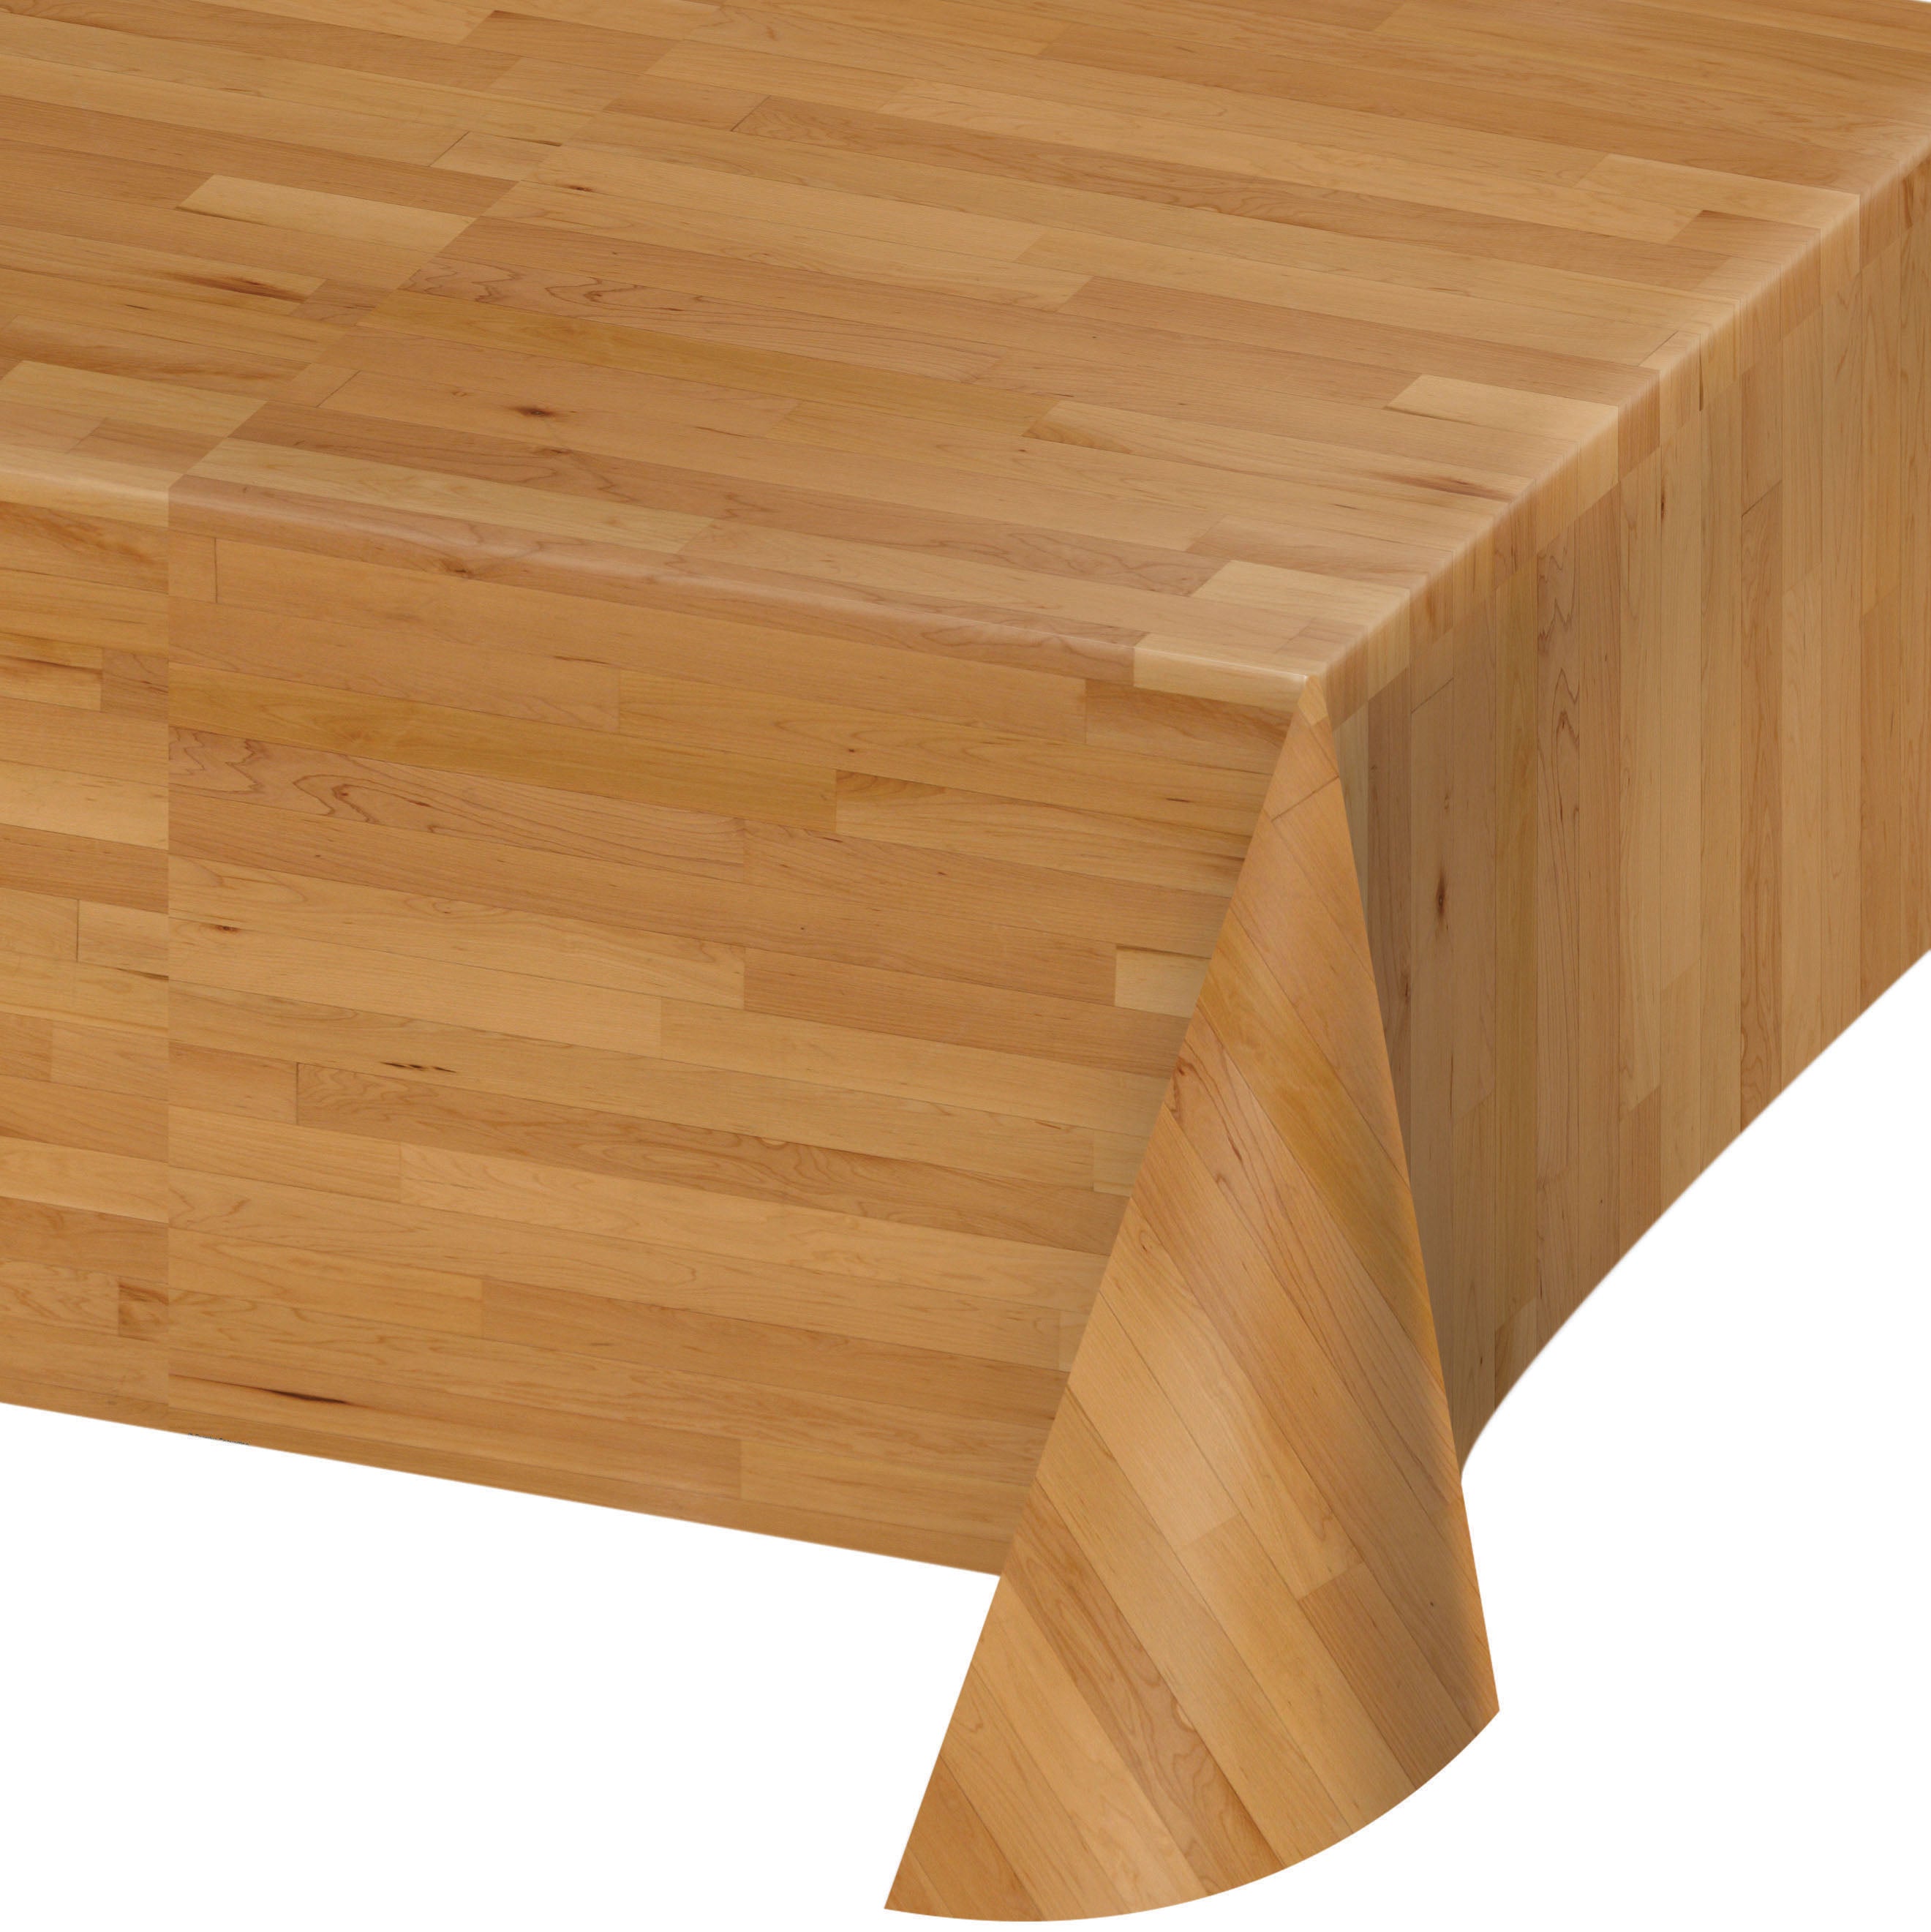 Table cover wood floor 137cmX259cm